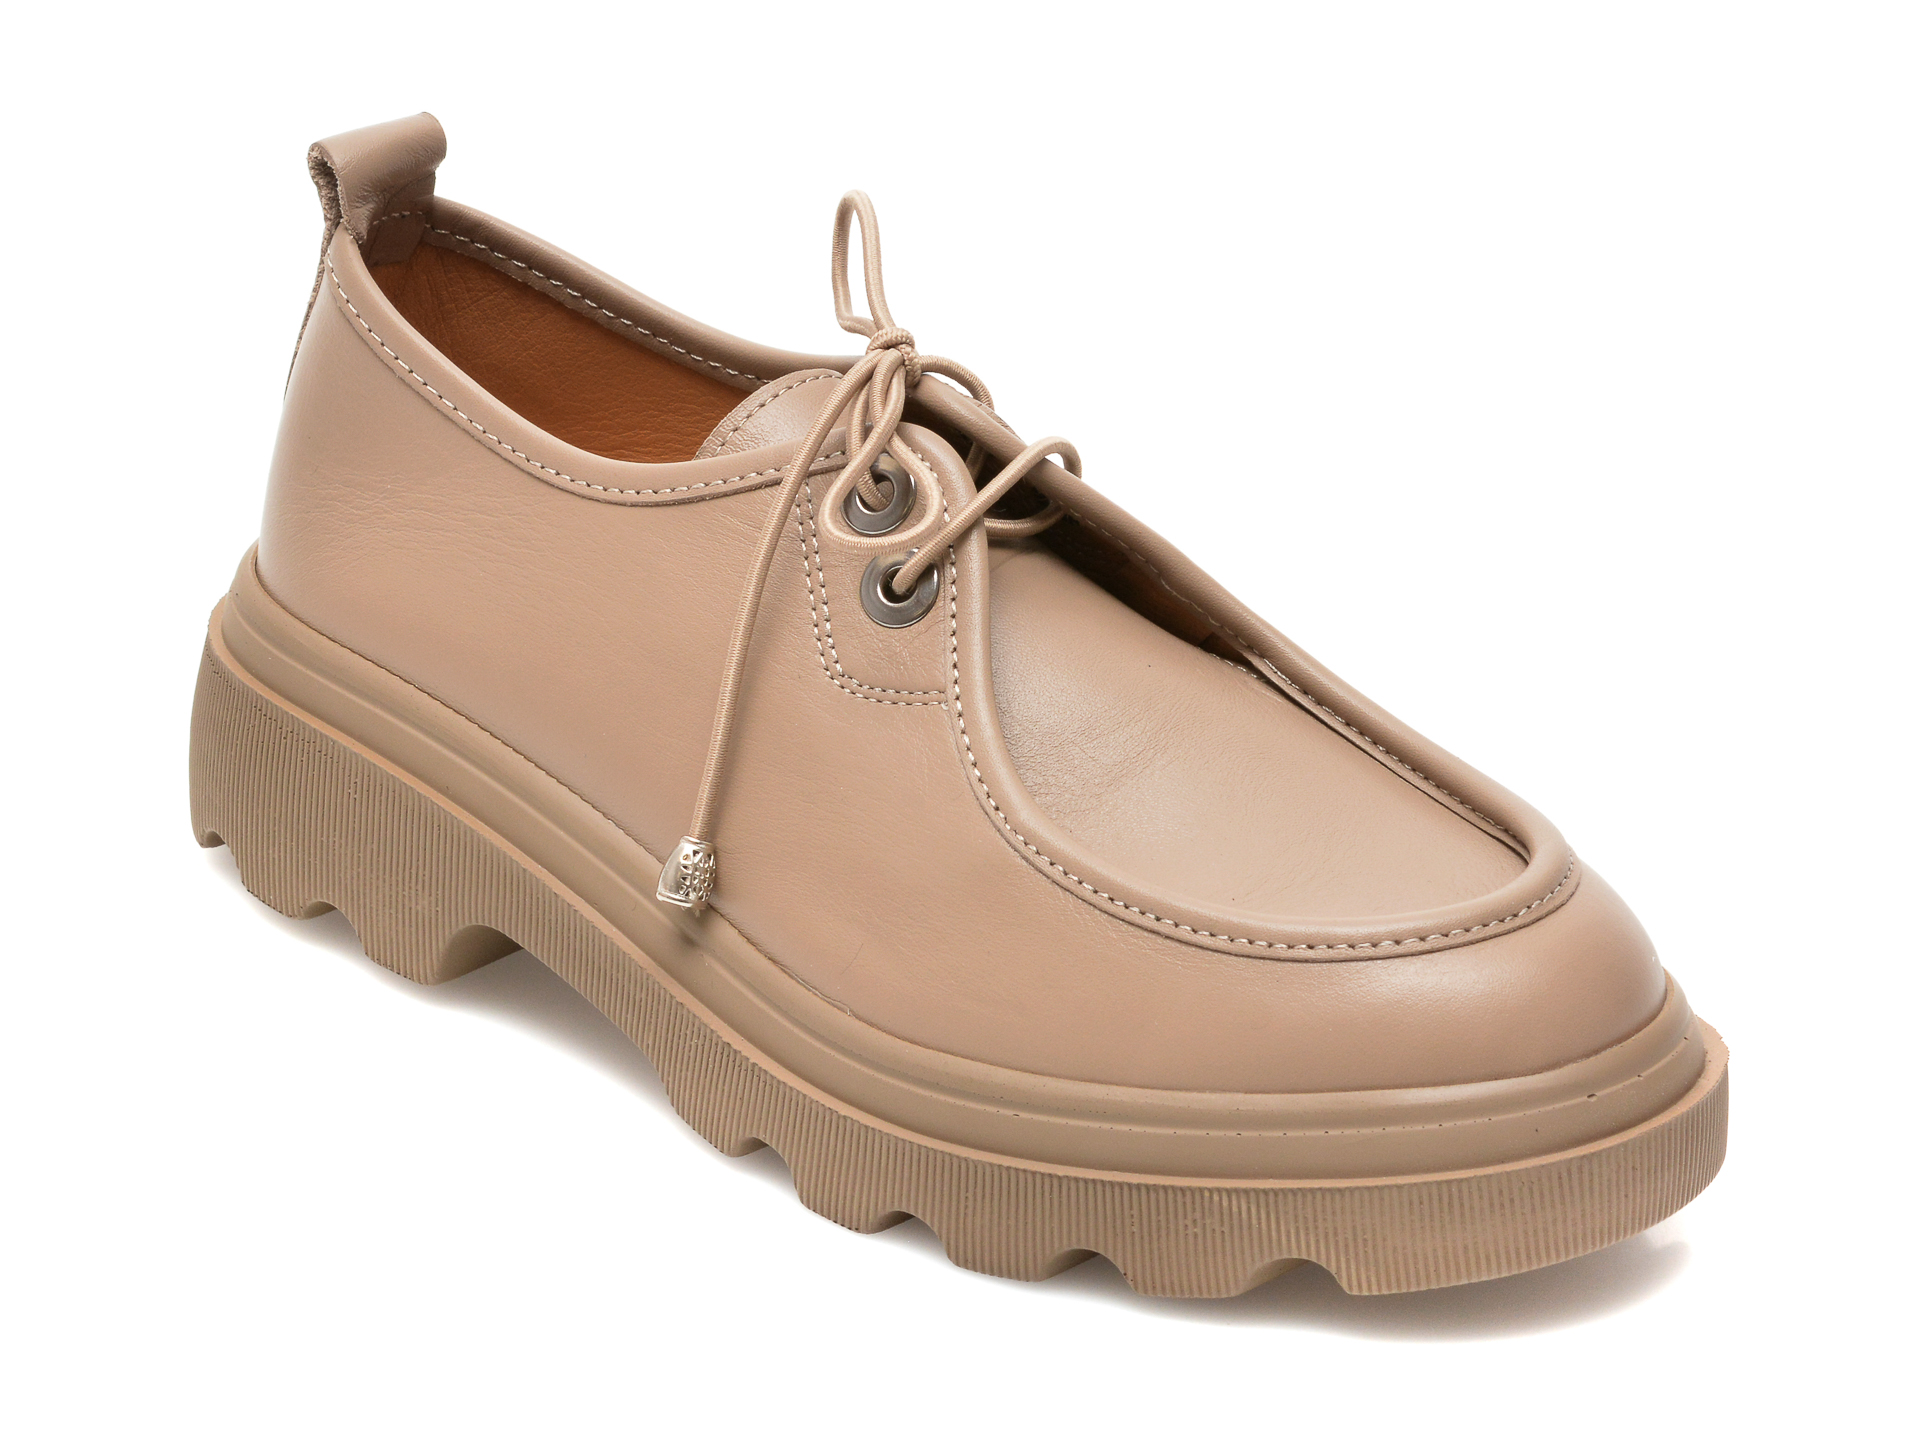 Pantofi FLAVIA PASSINI gri, 807, din piele naturala Flavia Passini imagine noua